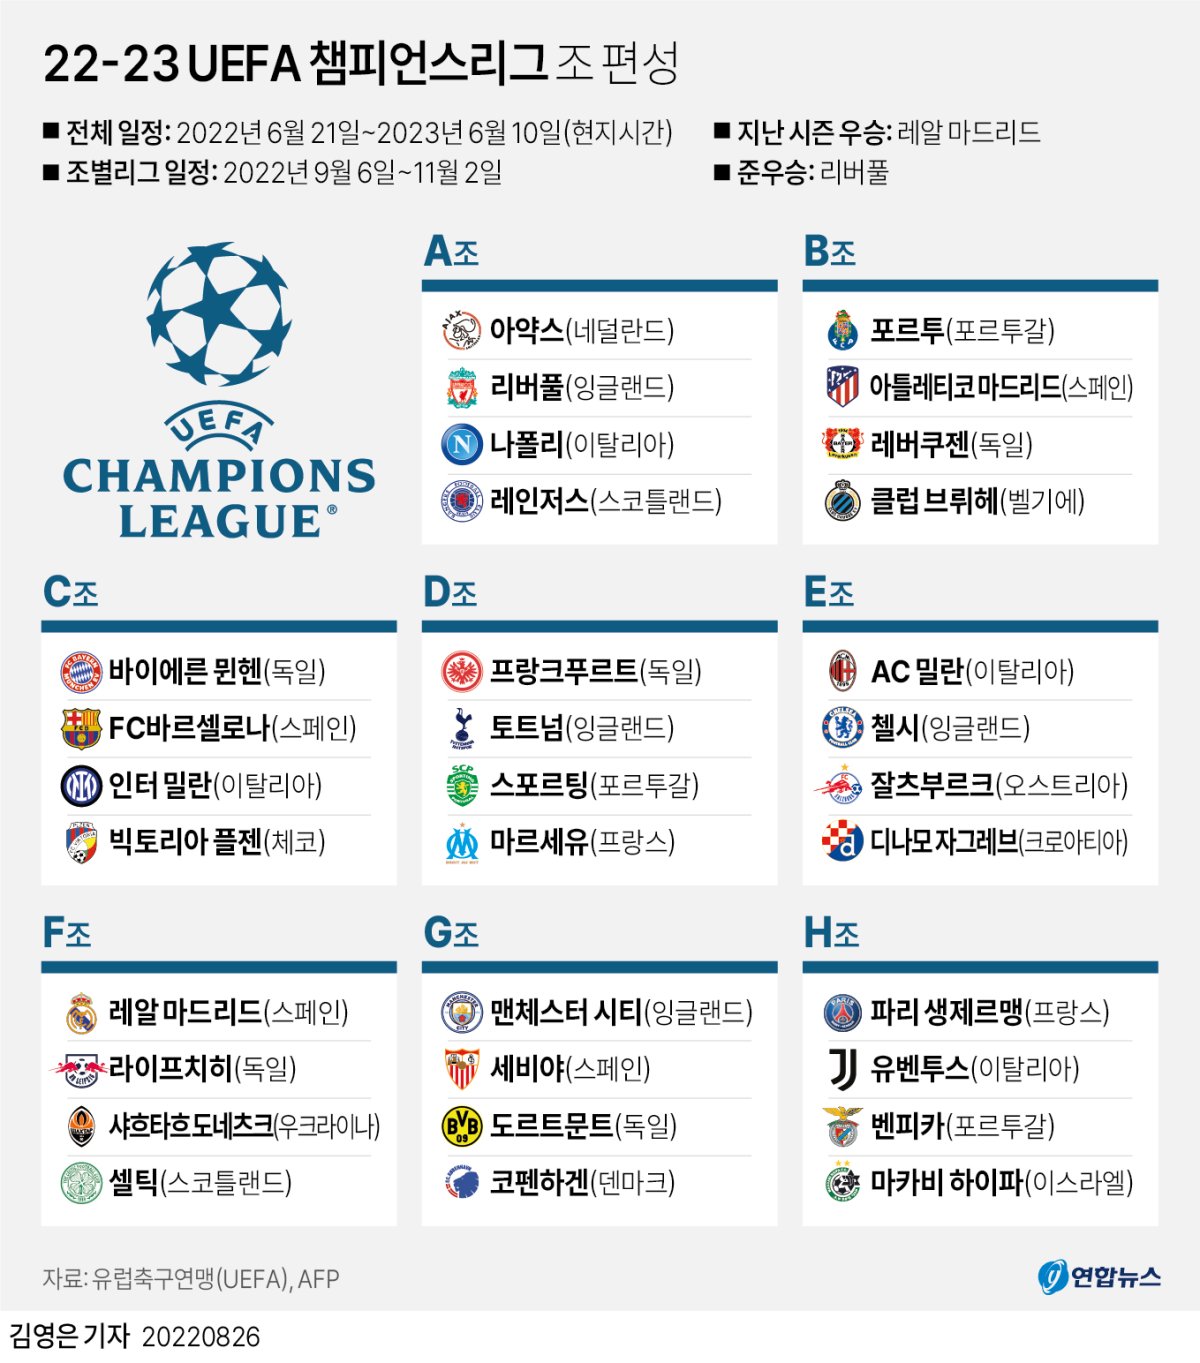 [그래픽] 22-23 UEFA 챔피언스리그 조 편성